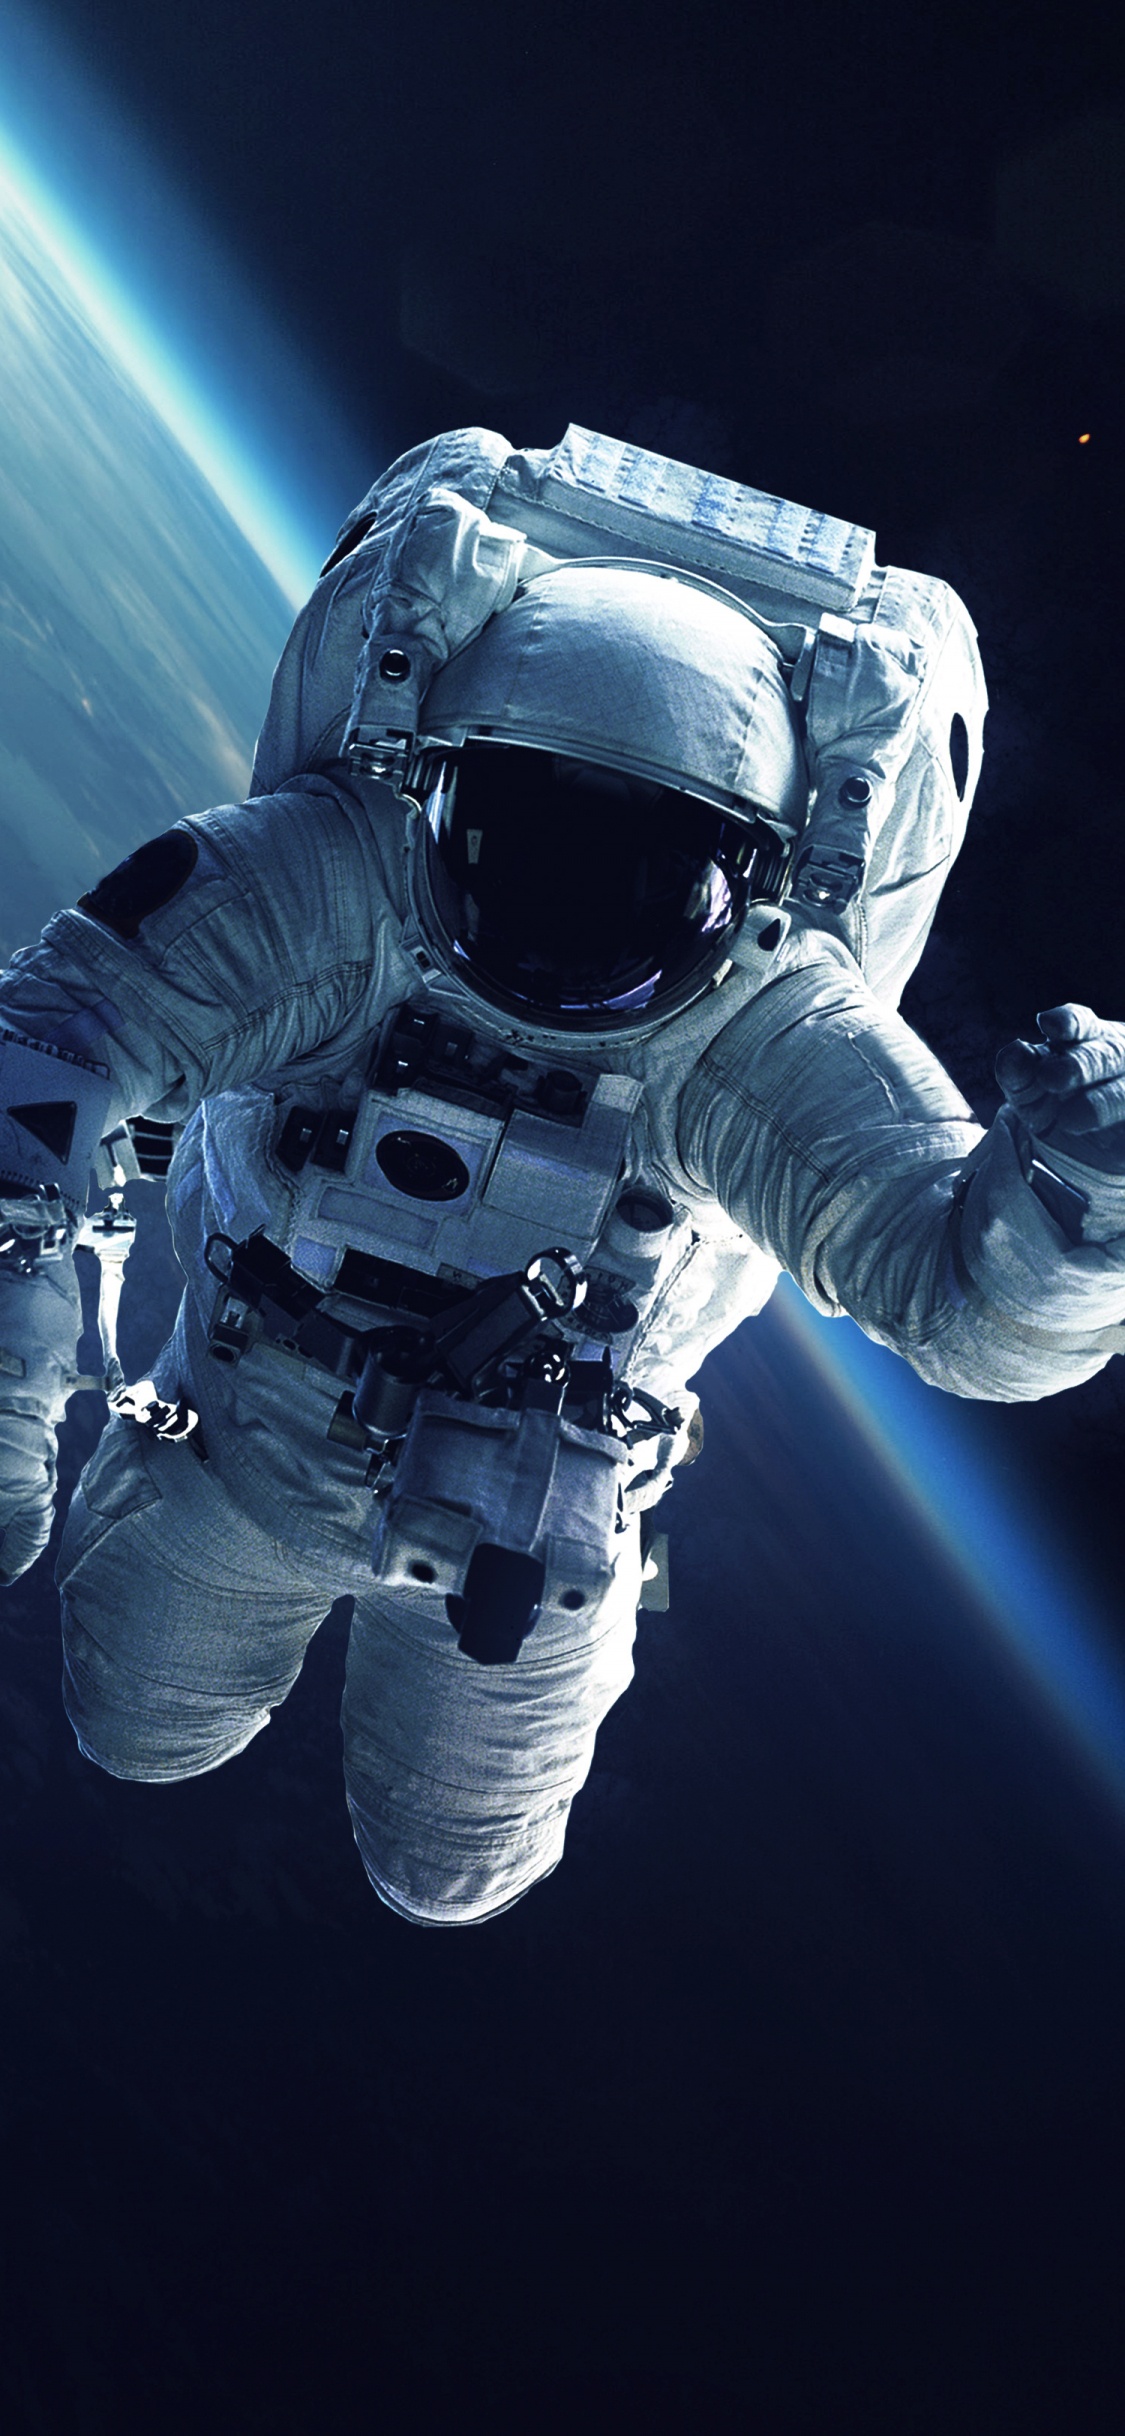 国际空间站, 宇航员, 美国宇航局, 空间探索, 外层空间 壁纸 1125x2436 允许